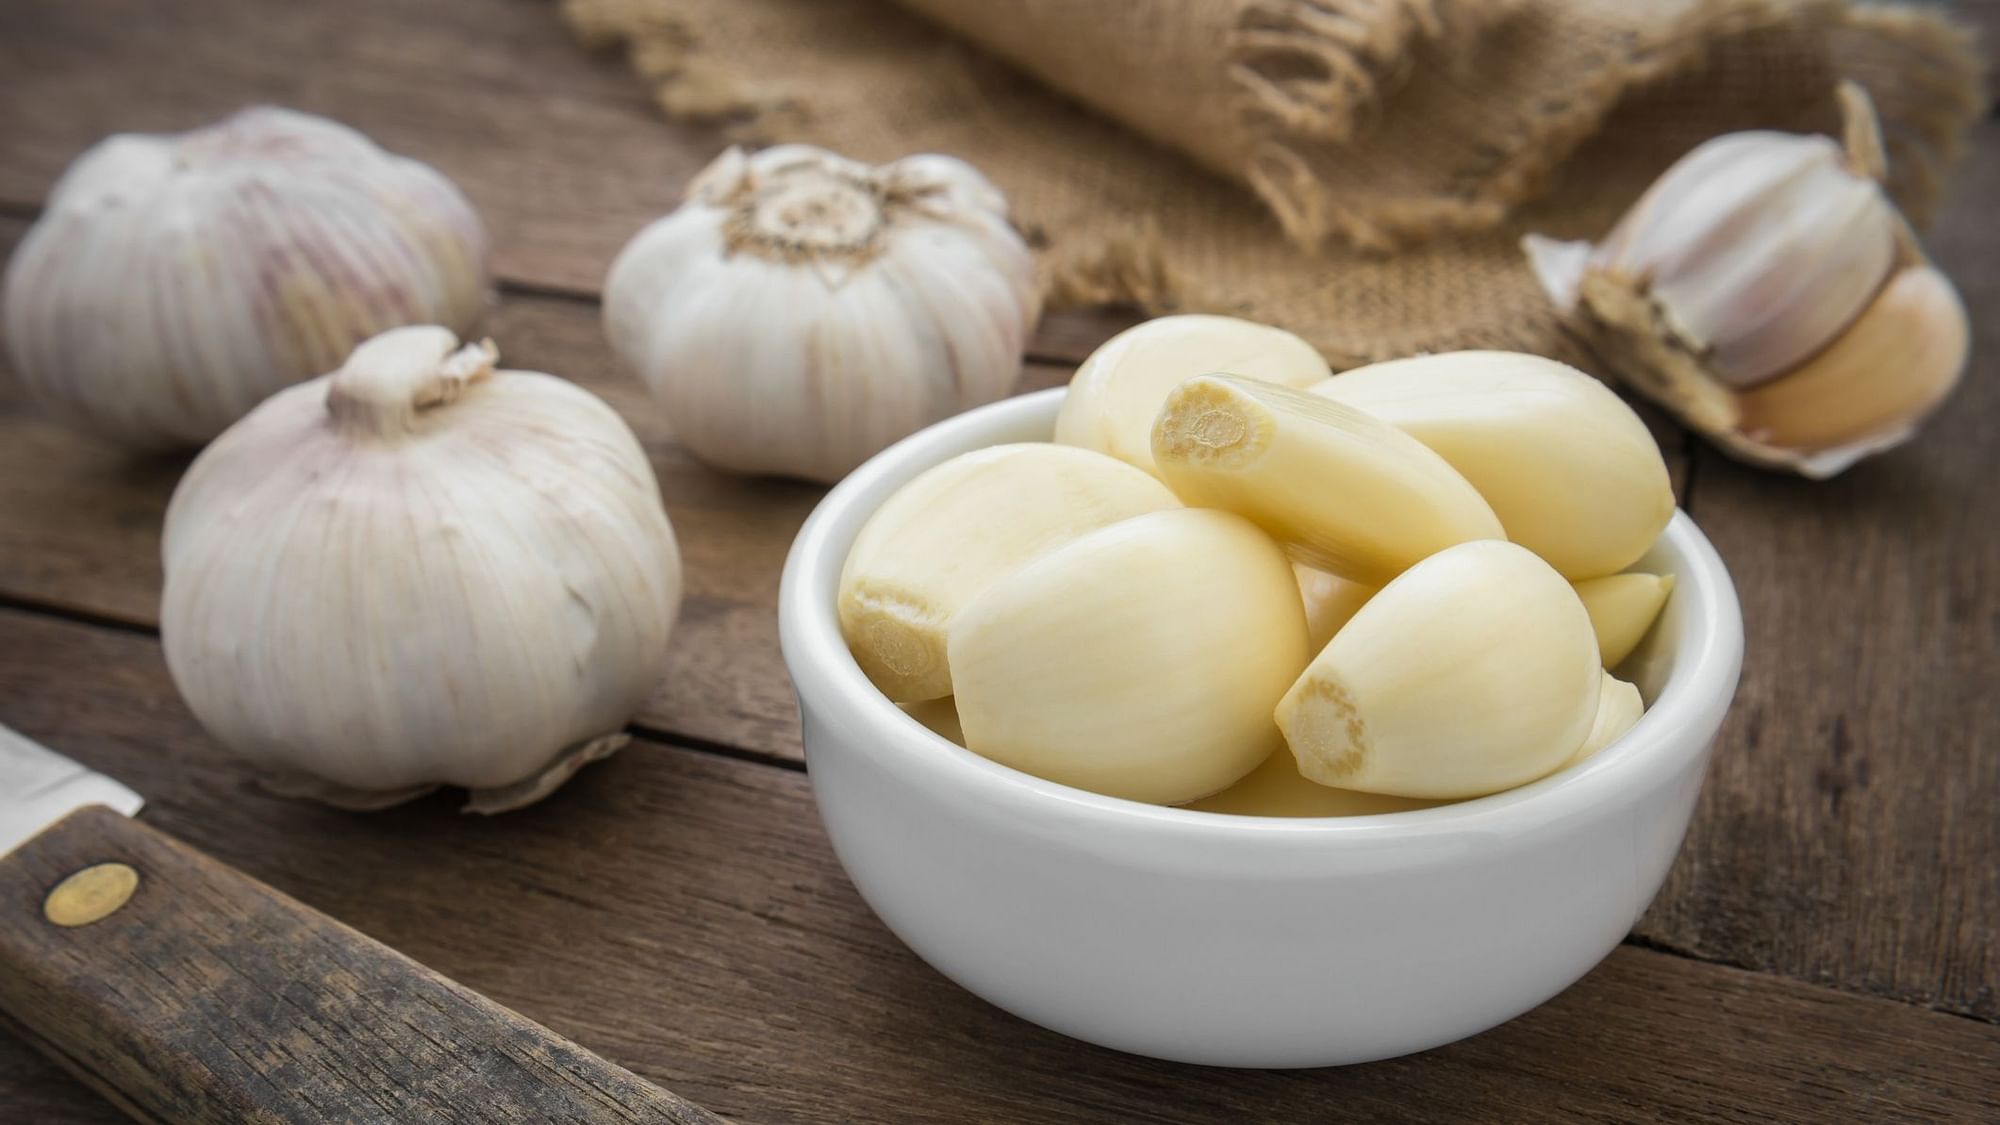 <div class="paragraphs"><p>Health benefits of Garlic:</p></div>